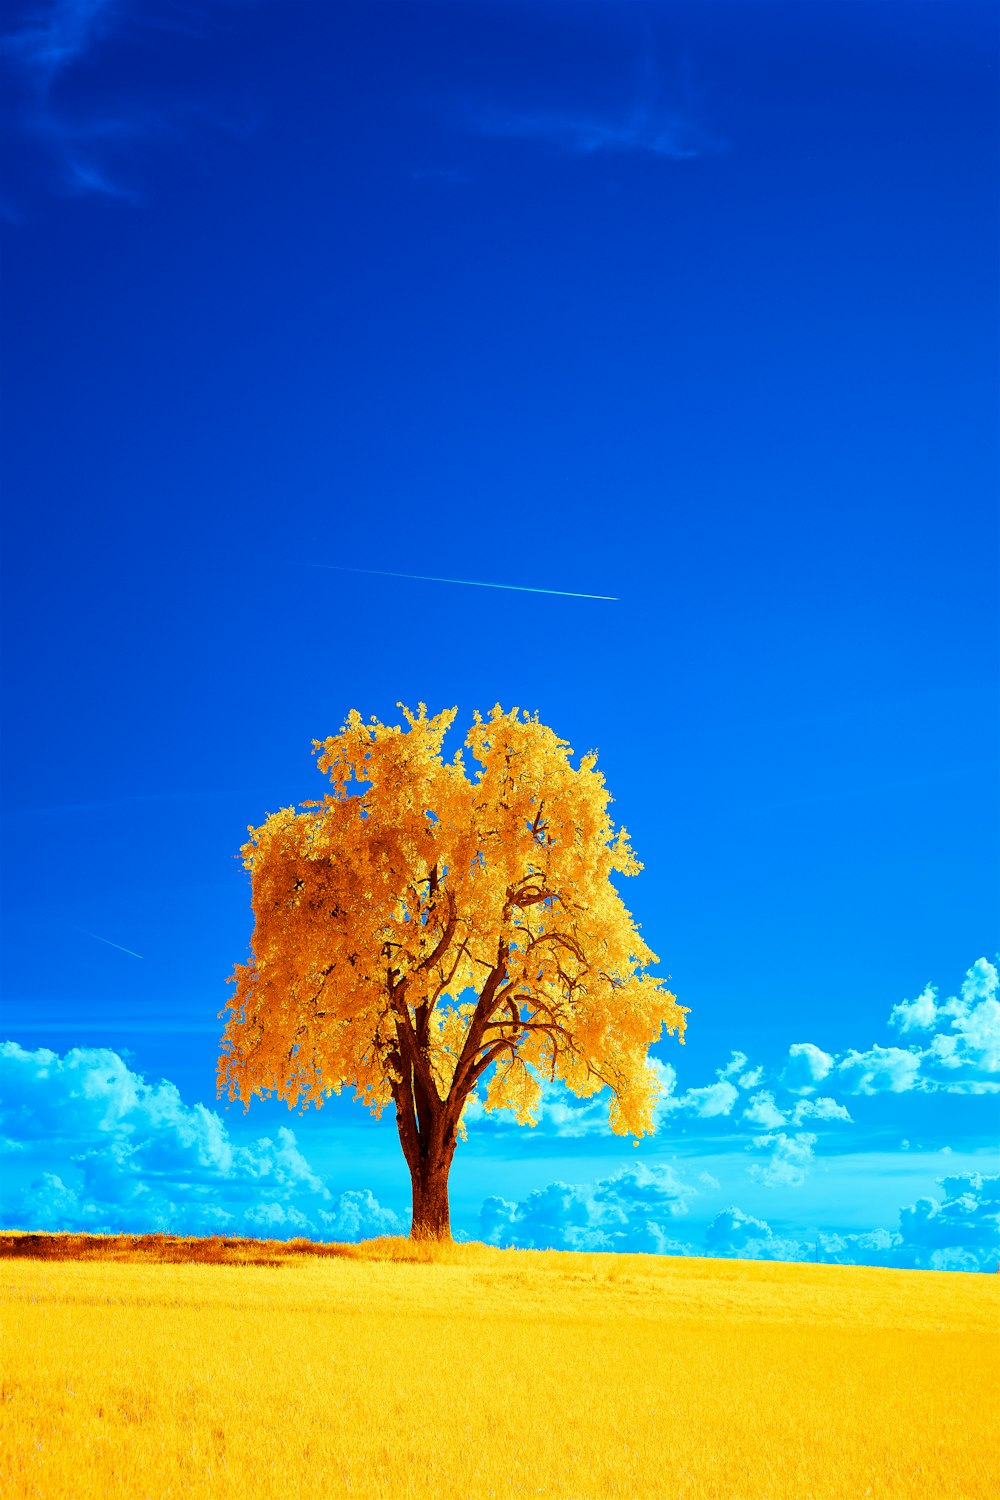 Cây lá vàng trên nền trời xanh miễn phí sẽ đem lại cảm giác thanh bình và yên tĩnh cho trang web của bạn. Hãy cùng tìm hiểu về những hình ảnh đẹp mắt liên quan đến cây lá vàng trên nền trời xanh miễn phí ngay bây giờ!